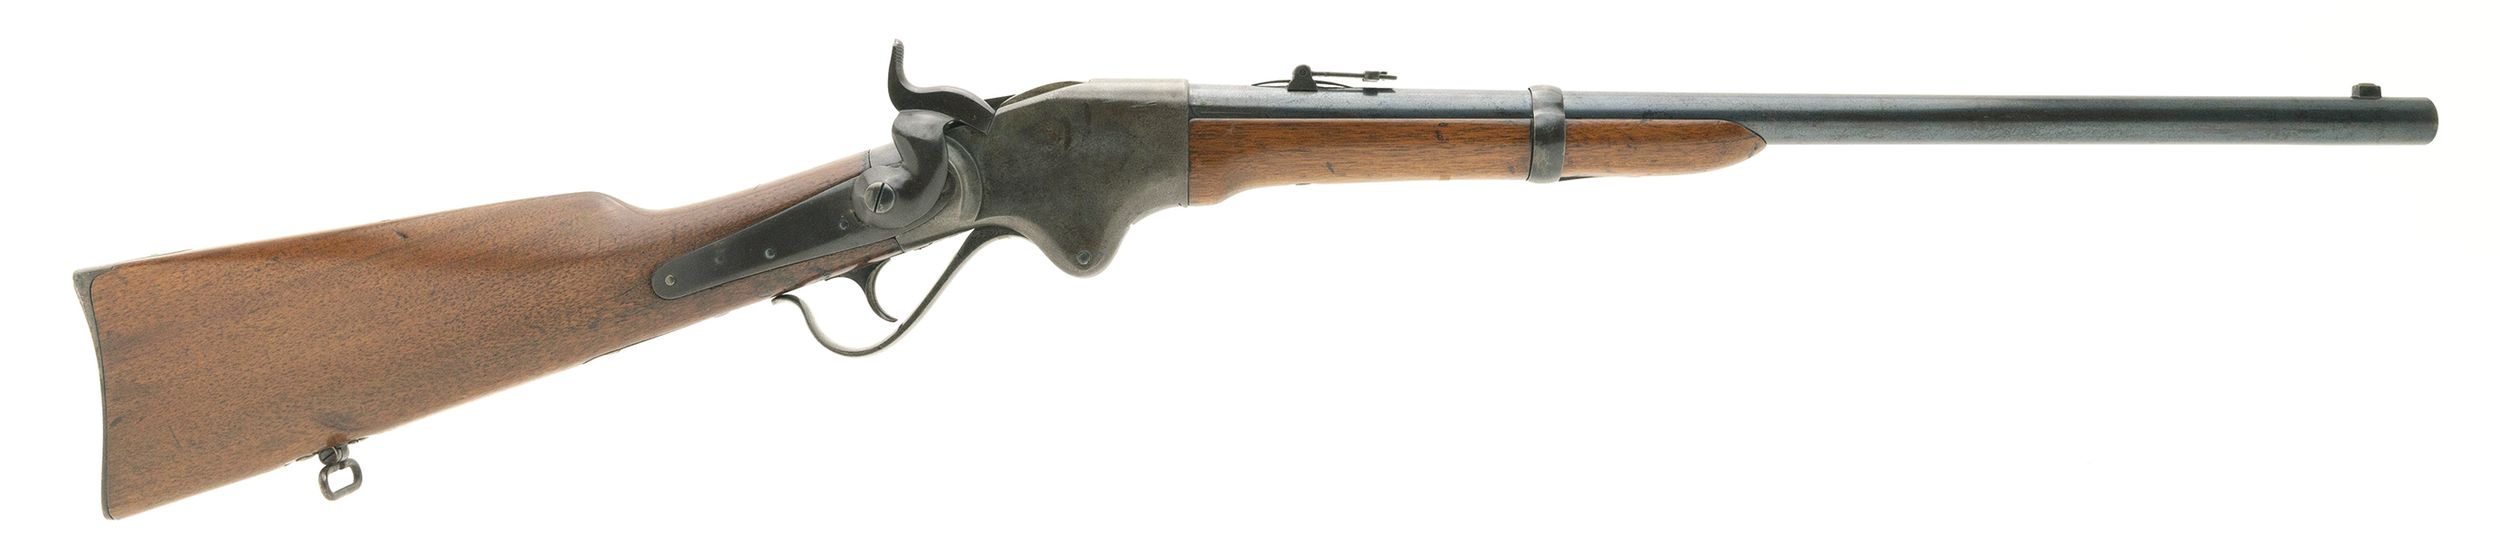 An original Spencer Carbine.